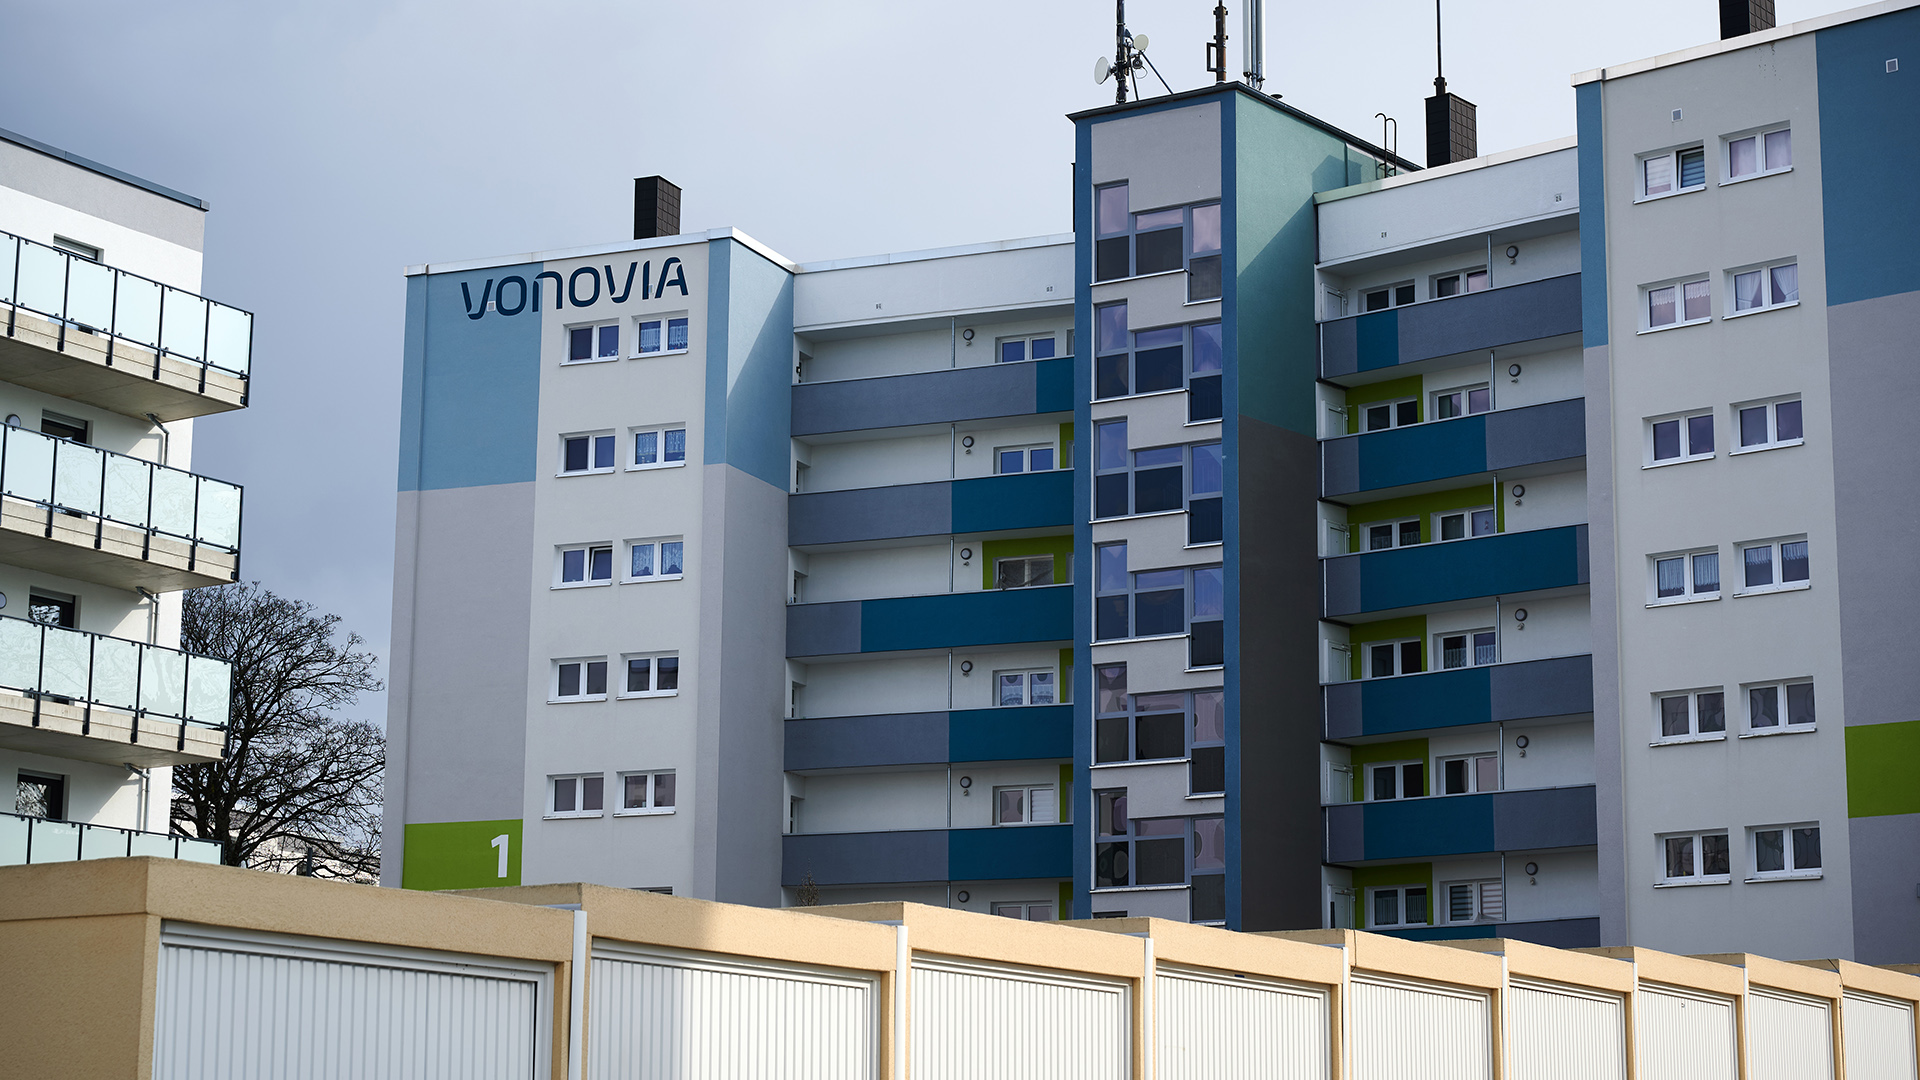 Ein Mehrfamilienhaus des Immobilienkonzerns Vonovia in Bochum | dpa